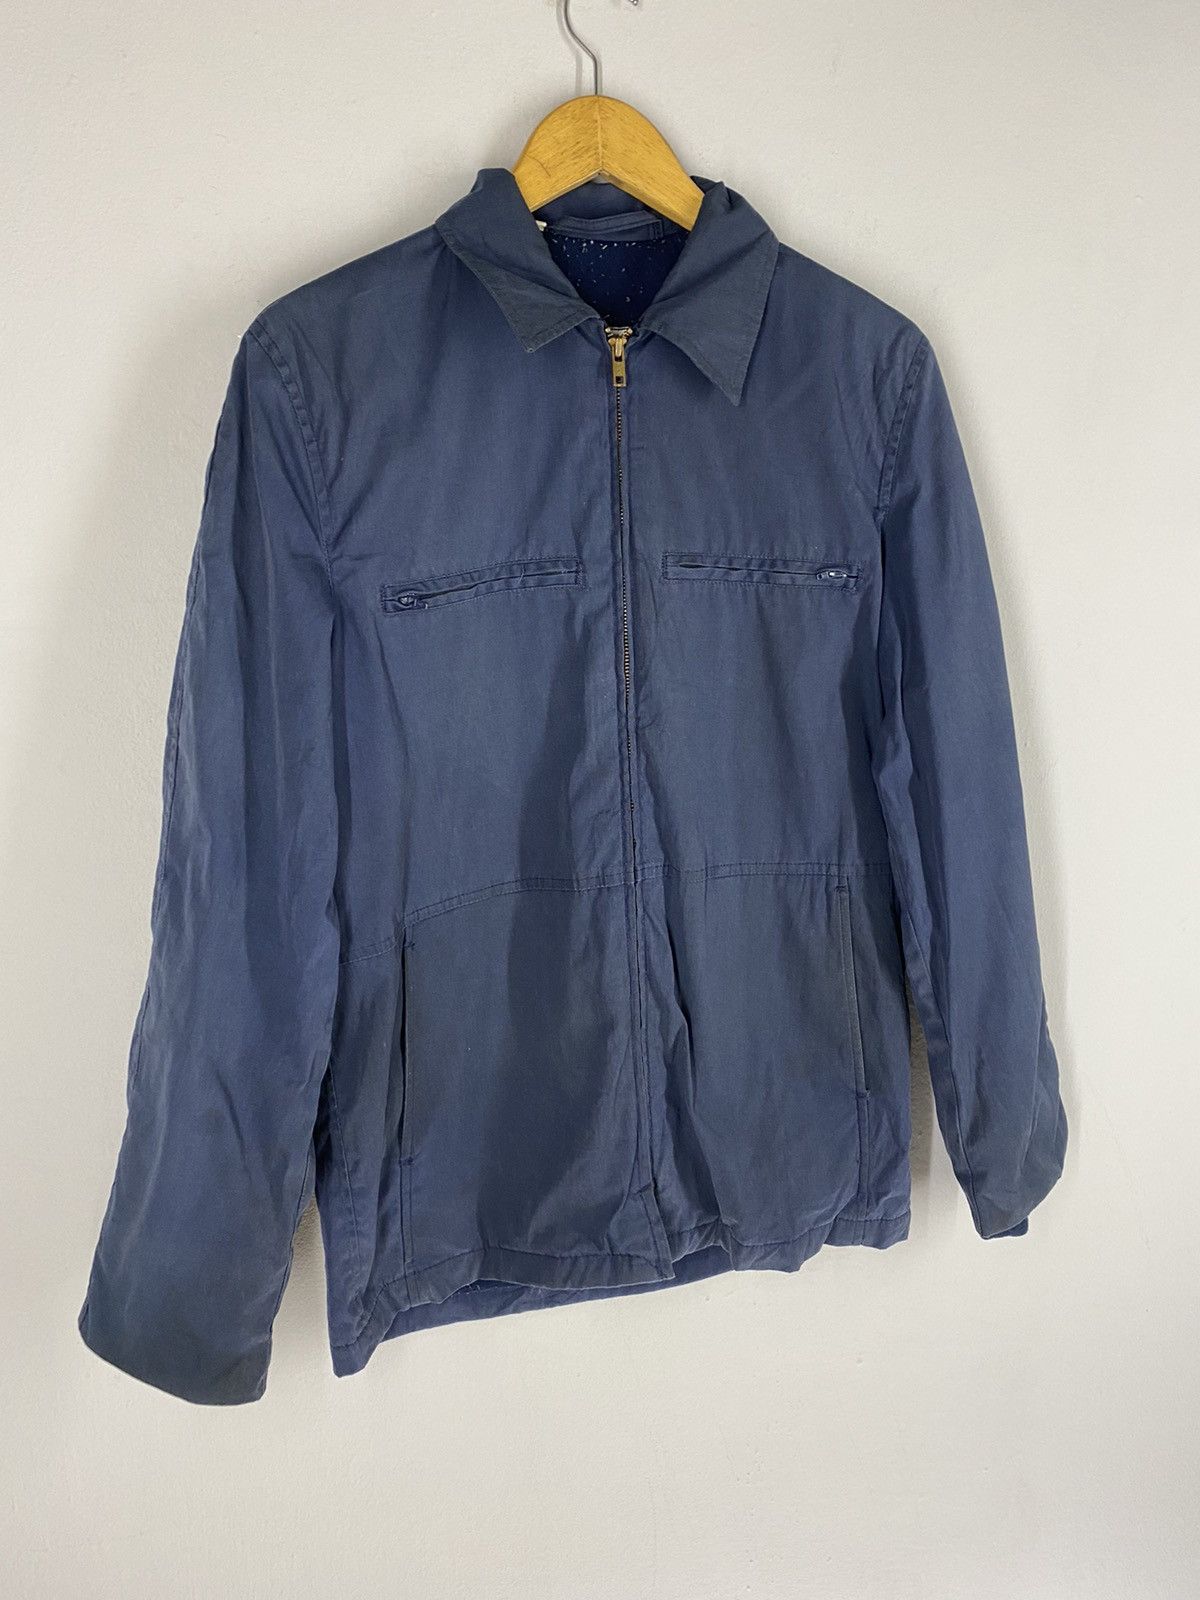 Usn Vintage 80s USN 32 Top Zipper Jacket Size US S / EU 44-46 / 1 - 4 Thumbnail